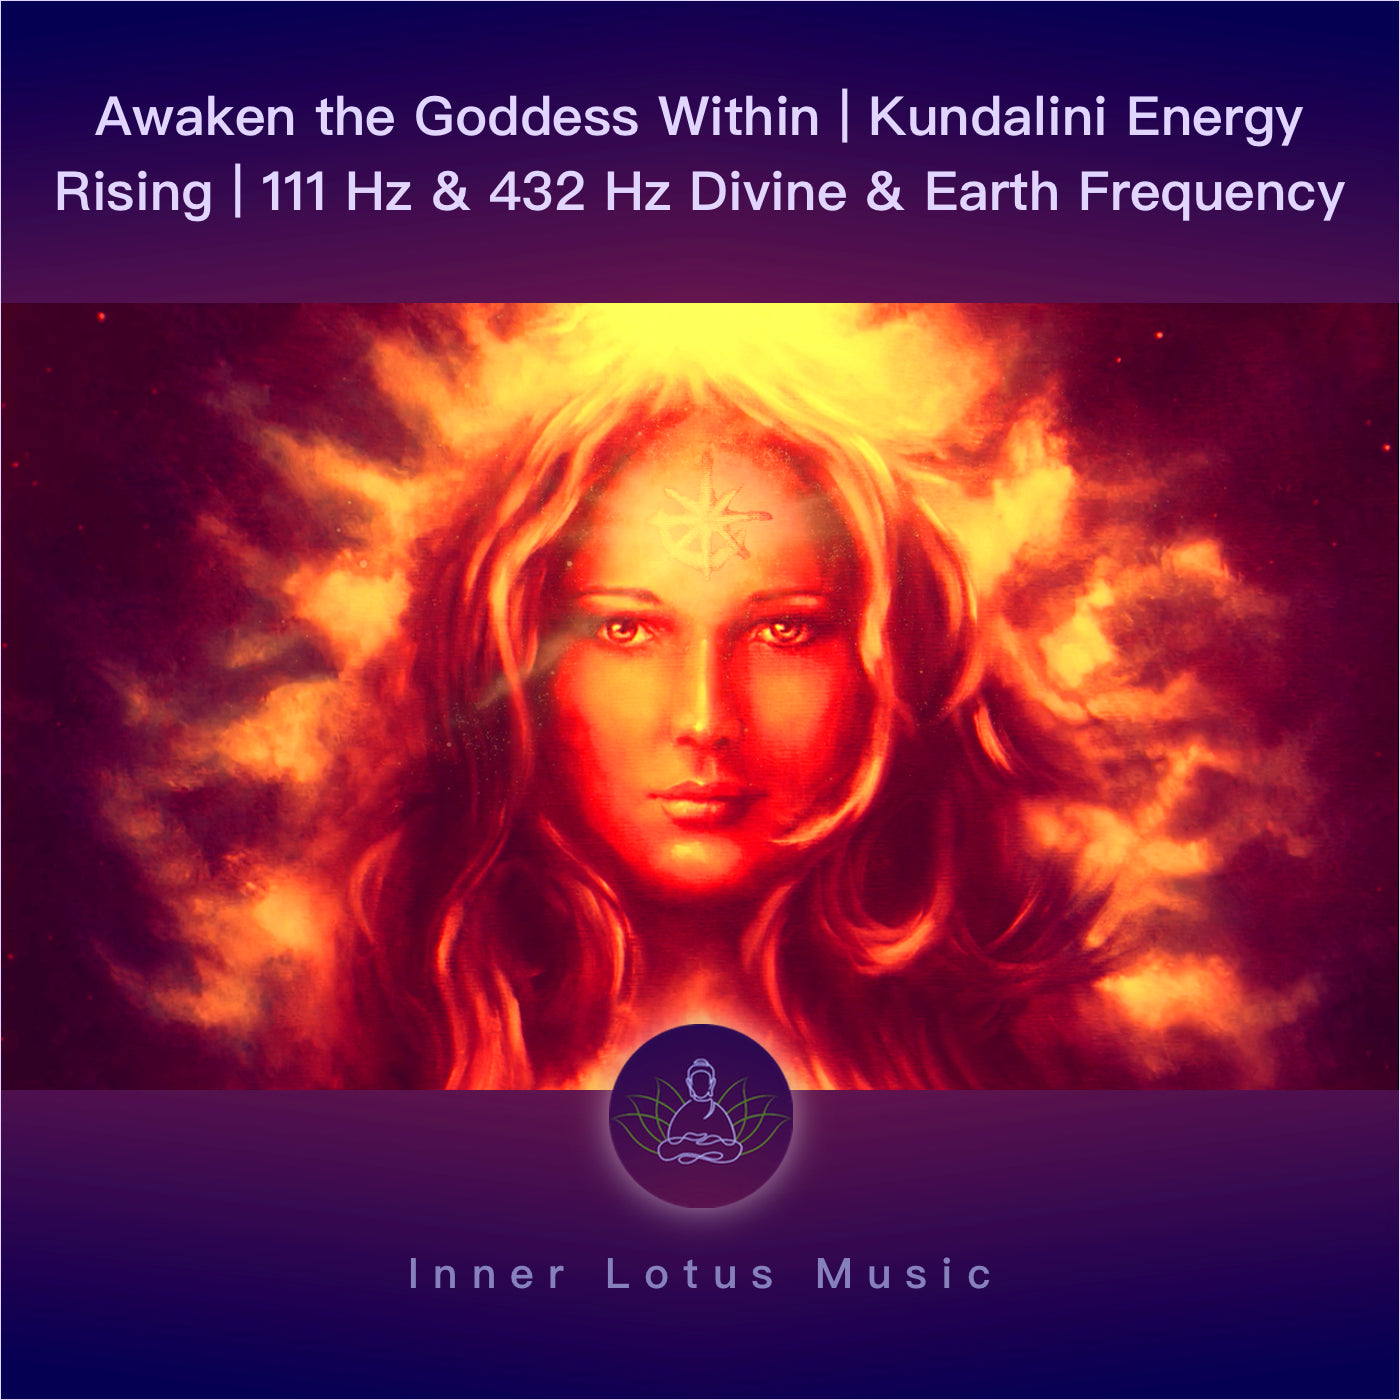 Despierta la Diosa Interior | Elevación de la Energía Kundalini | 111 Hz & 432 Hz Música Frecuencia Divina y Terrestre